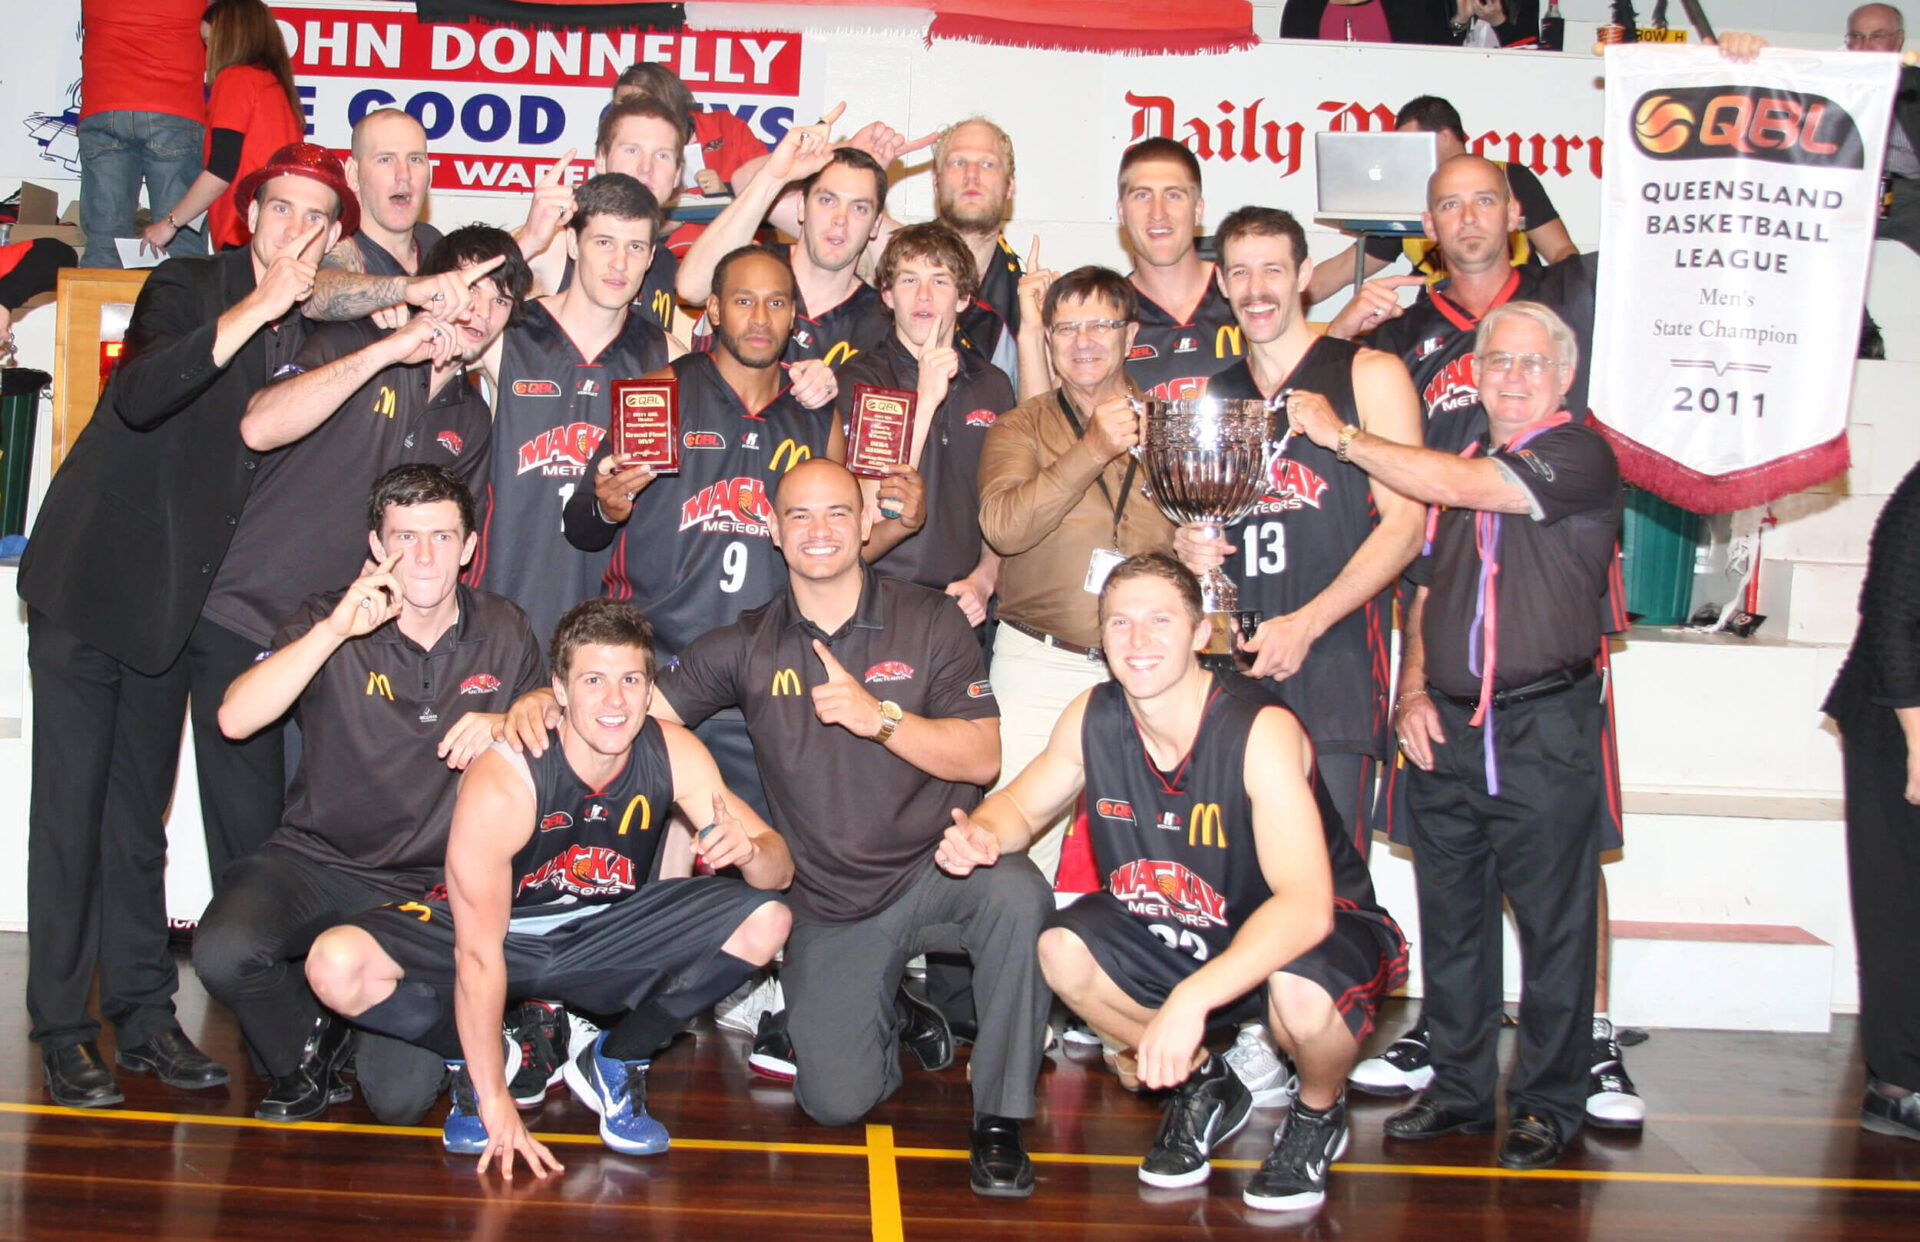 Championship Teams - 2011 McDonald’s Mackay Meteors Overall Record - 17 wins & 3 losses at Mackay Basketball